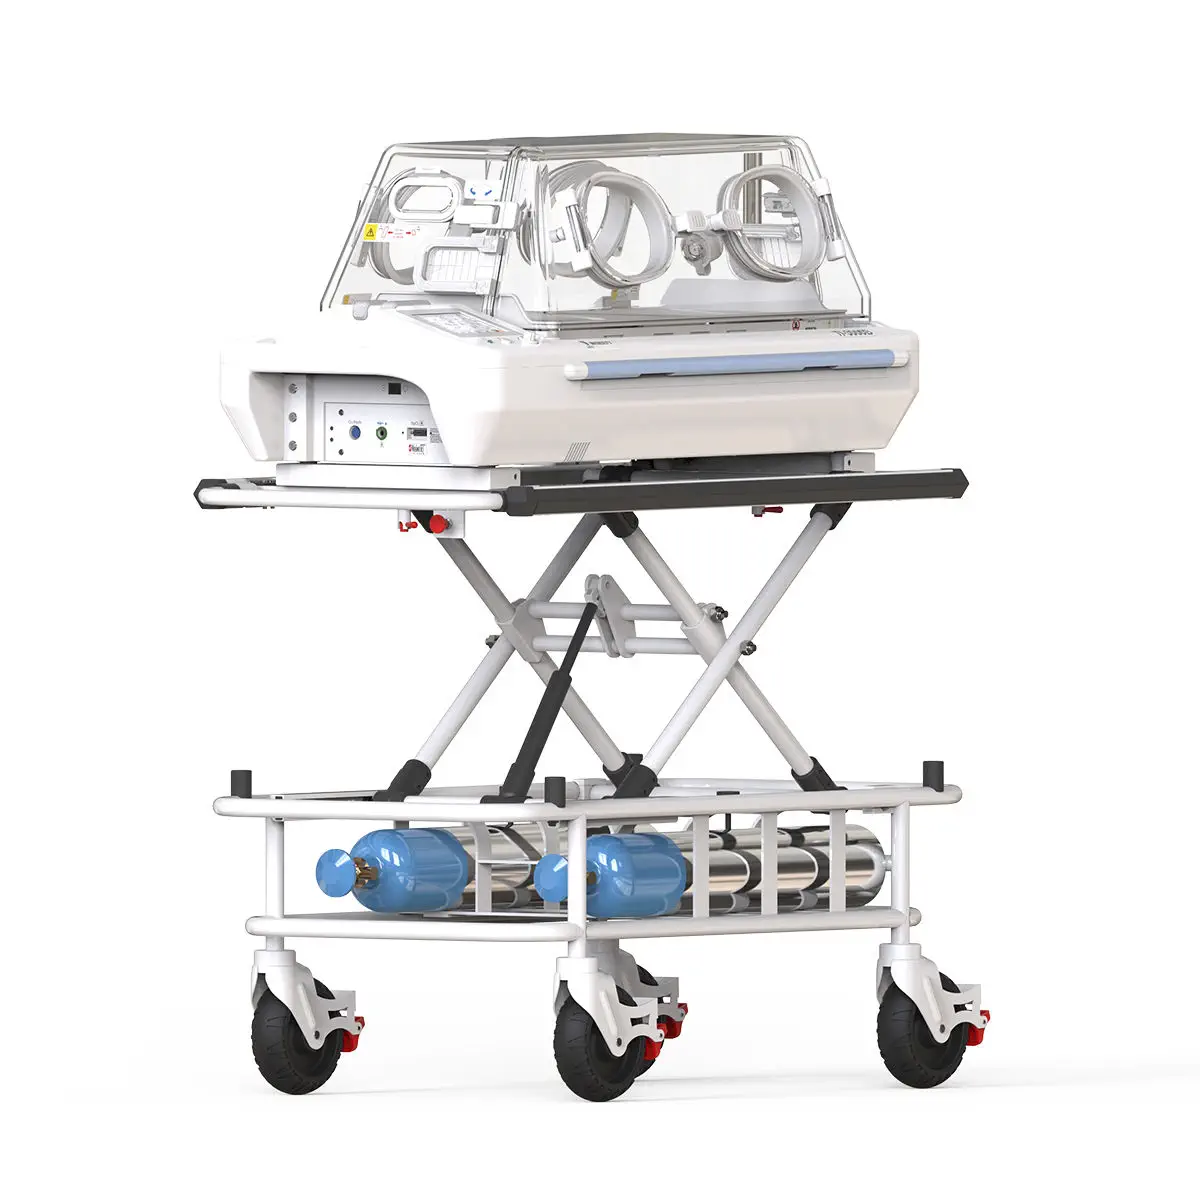 ตู้อบเด็กสำหรับเคลื่อนย้าย  Neonatal transport incubator TI-3000B  David